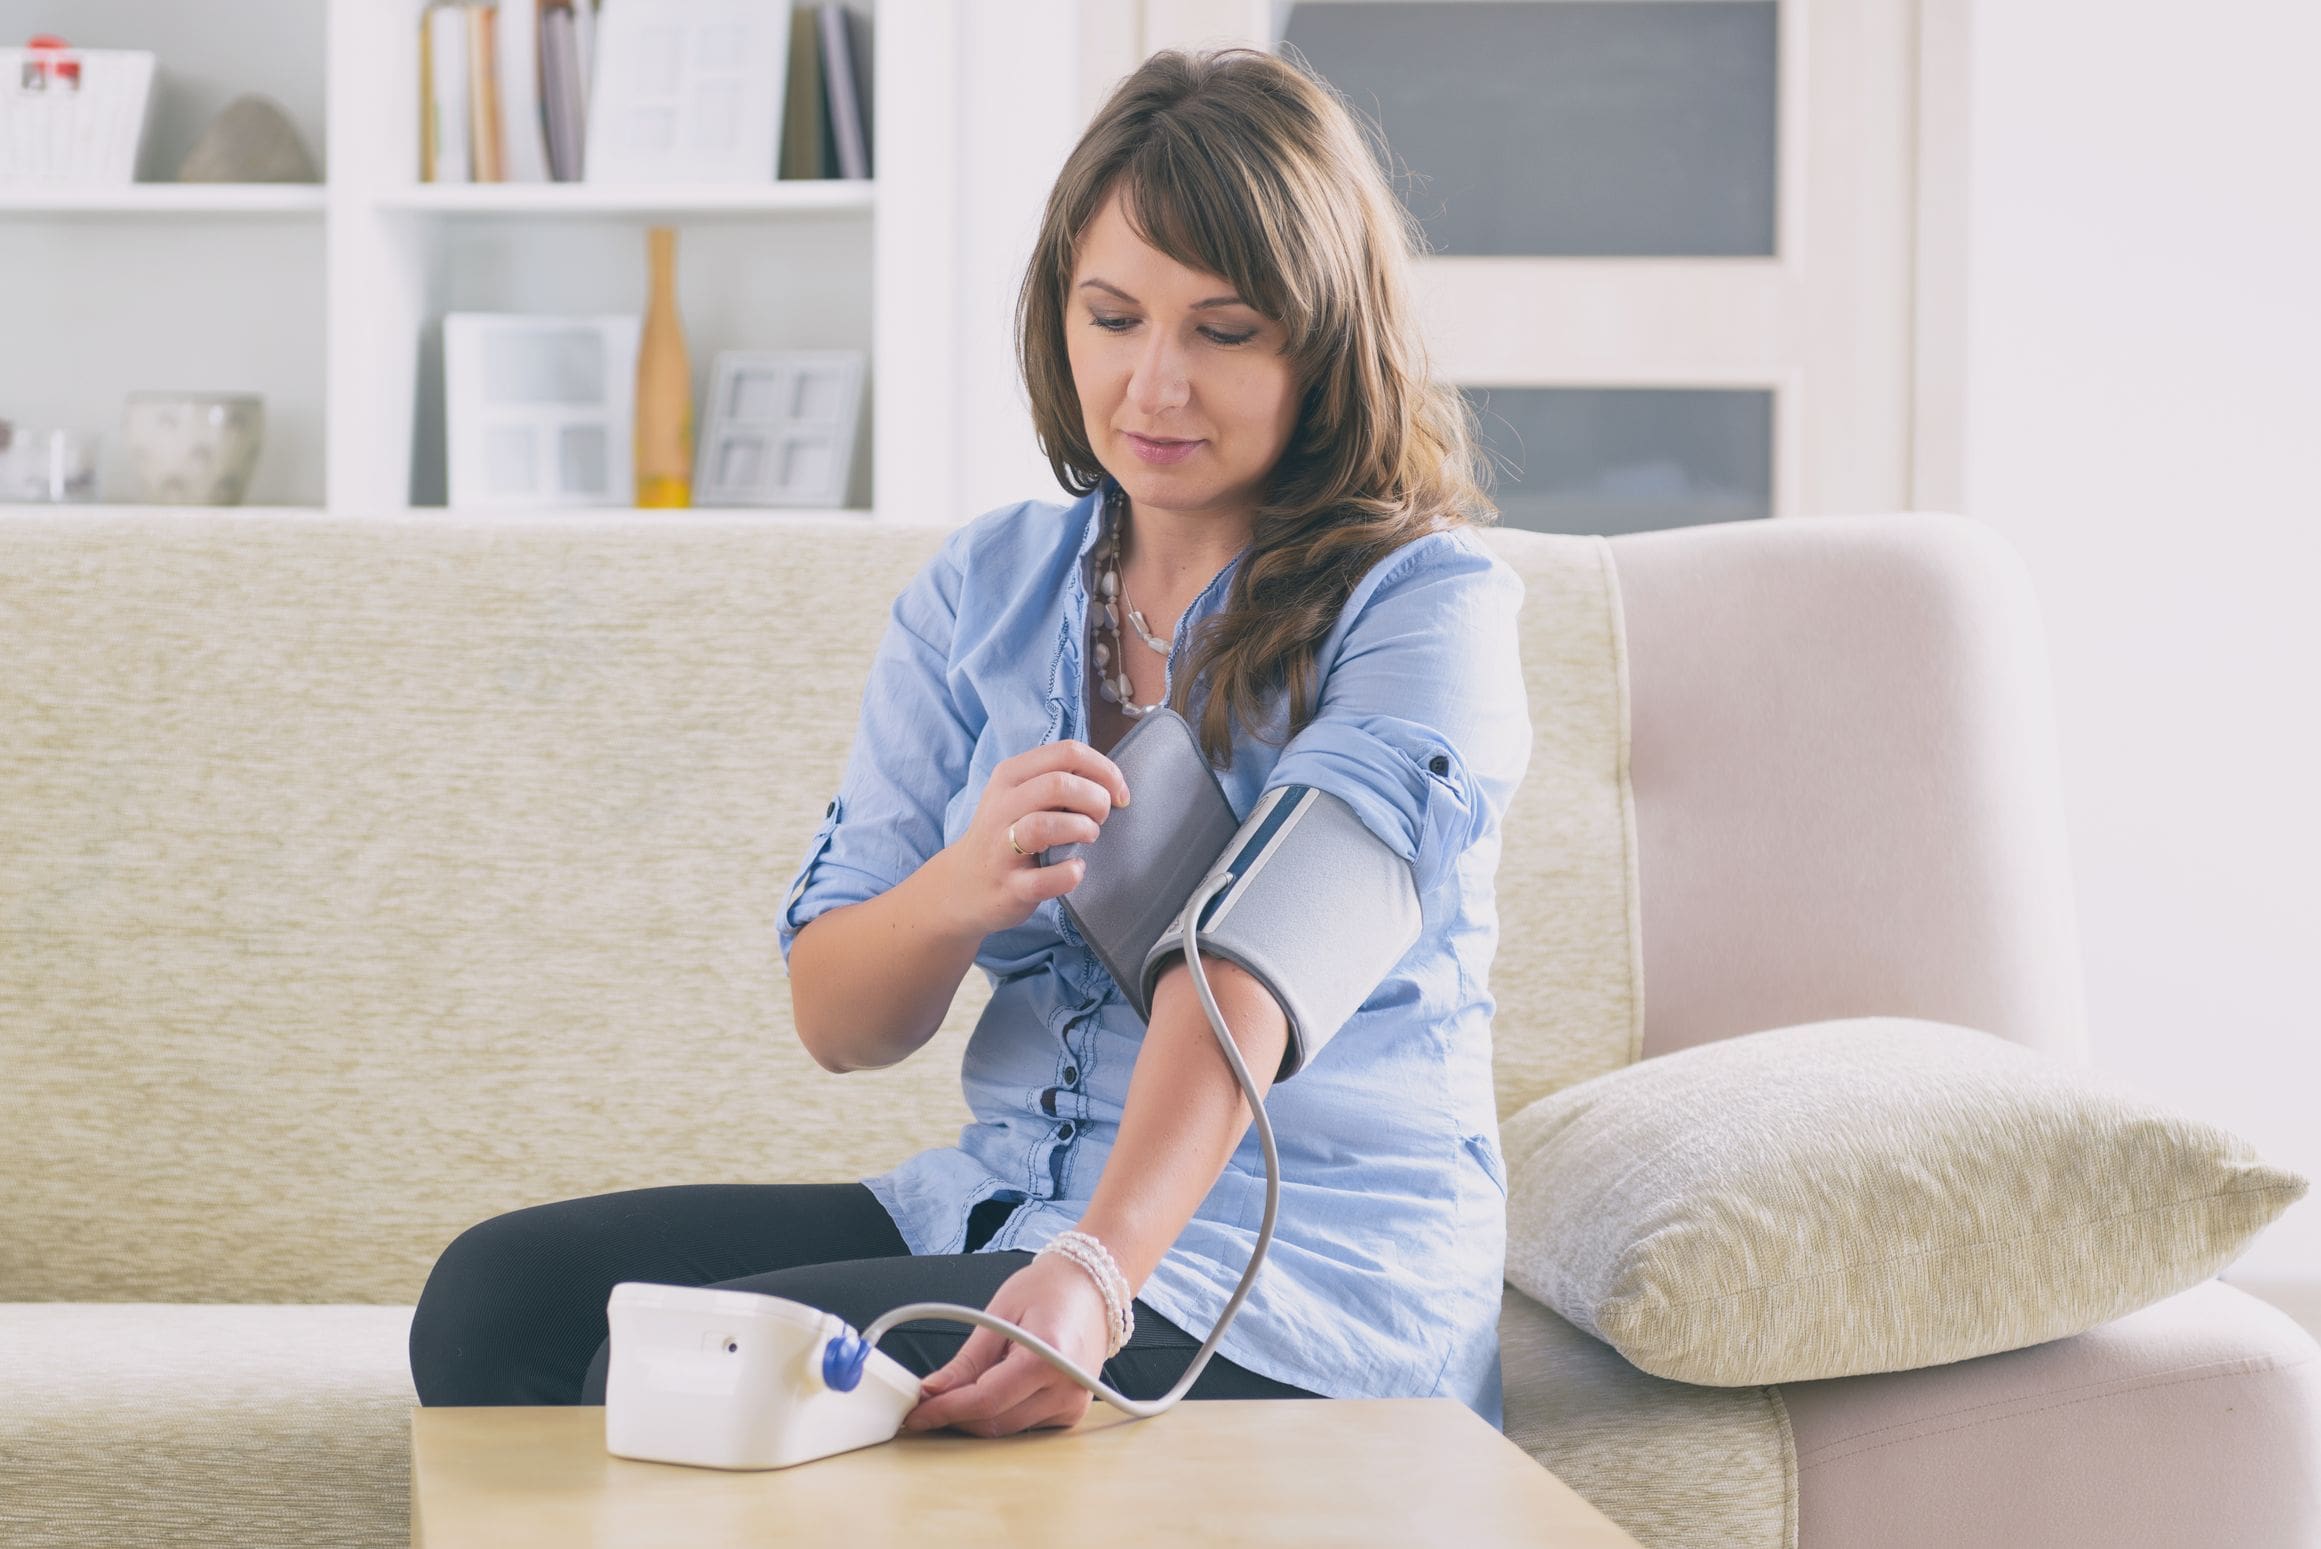 COVID-19: do blood pressure medicines increase risk?